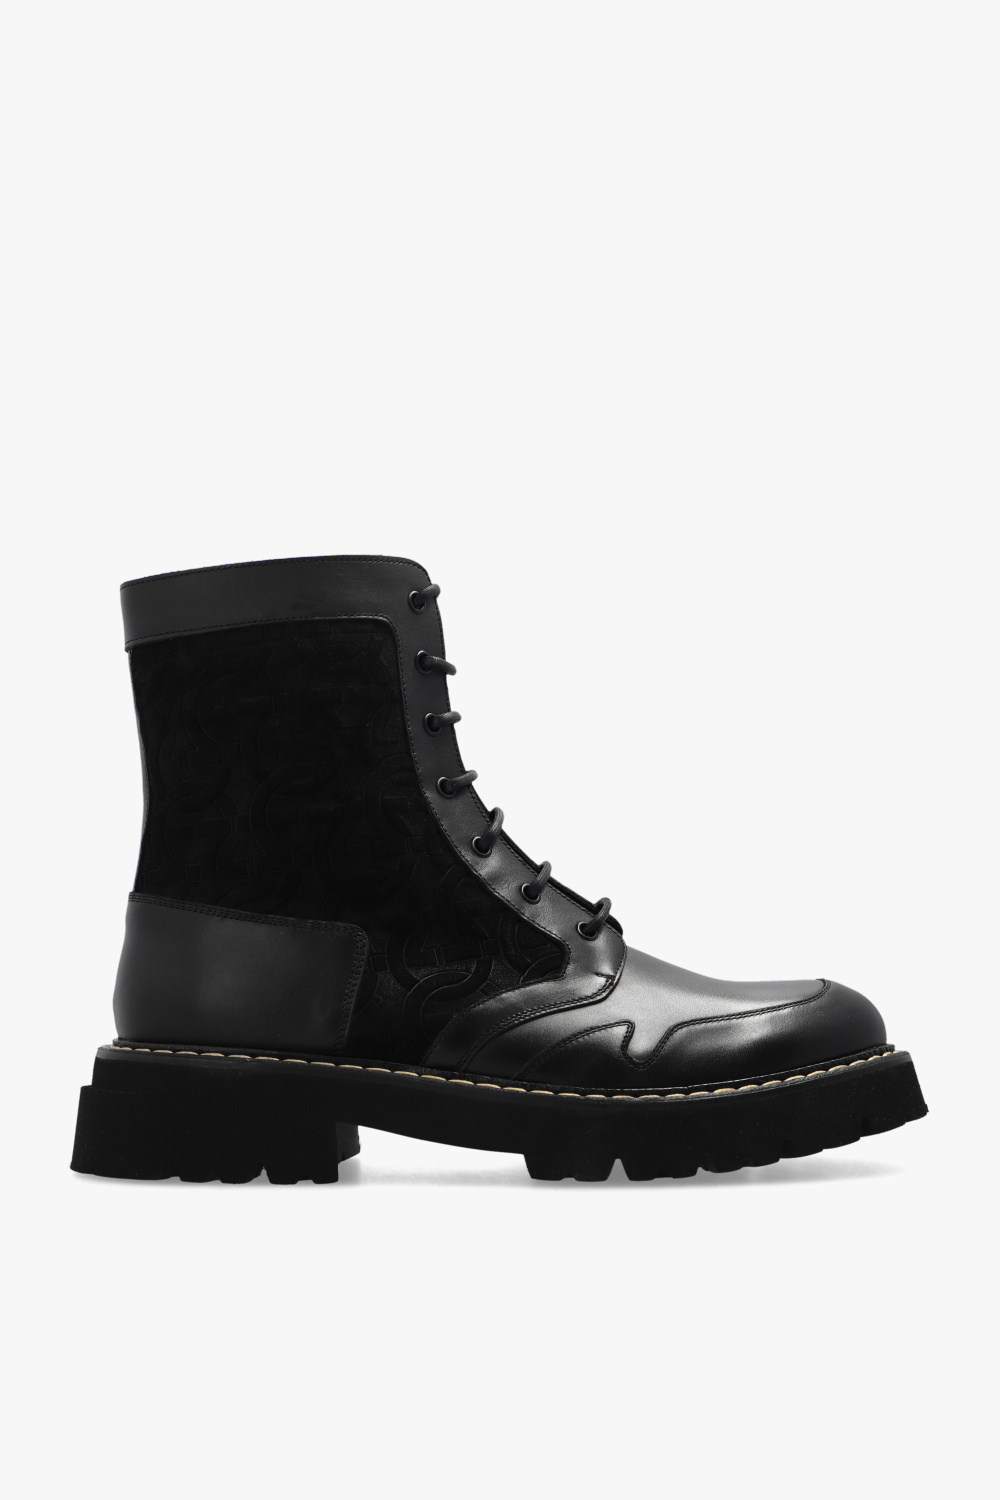 Salvatore Ferragamo ‘Luri’ ankle boots